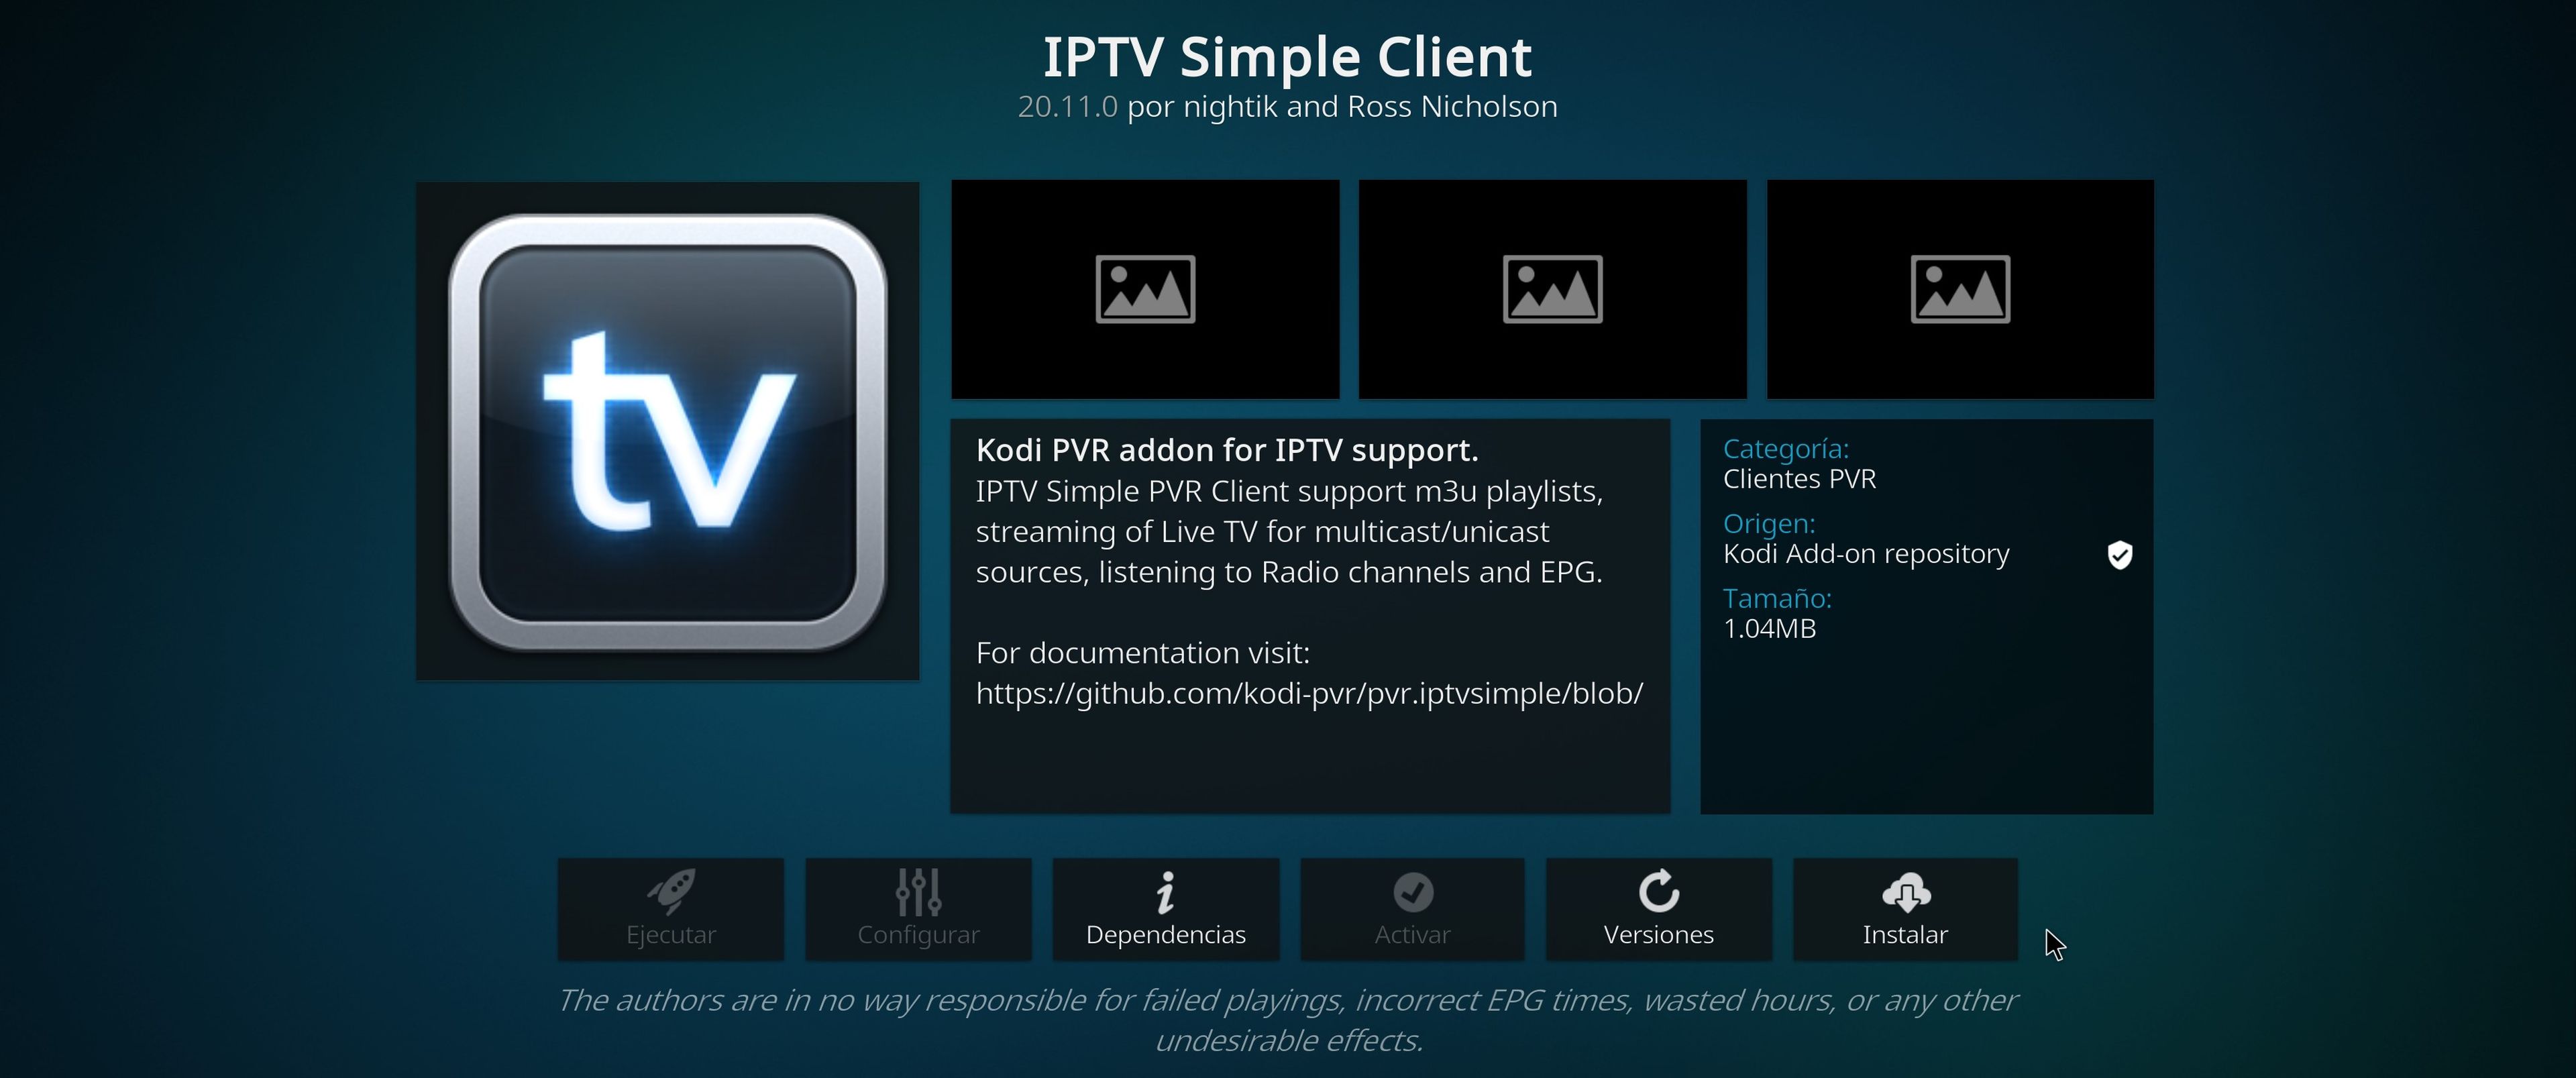 IPTV Simple Cliente de Kodi